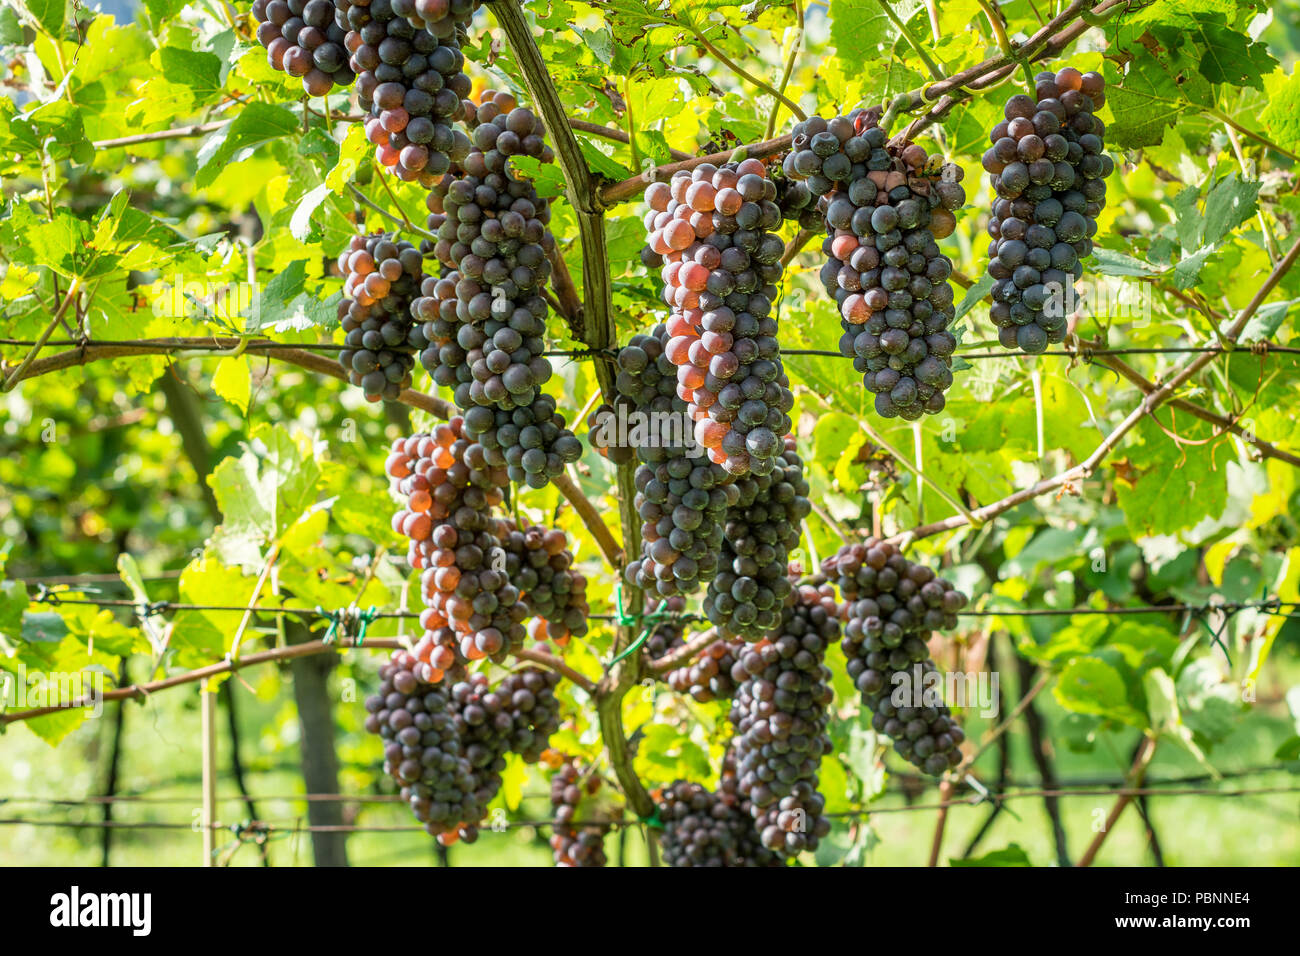 Il Pinot Grigio vitigno. Il Pinot Grigio è un vino bianco varietà di uva che è ottenuto da uve con grigiastro, bianco rosso e o violacea. A sud di ty Foto Stock